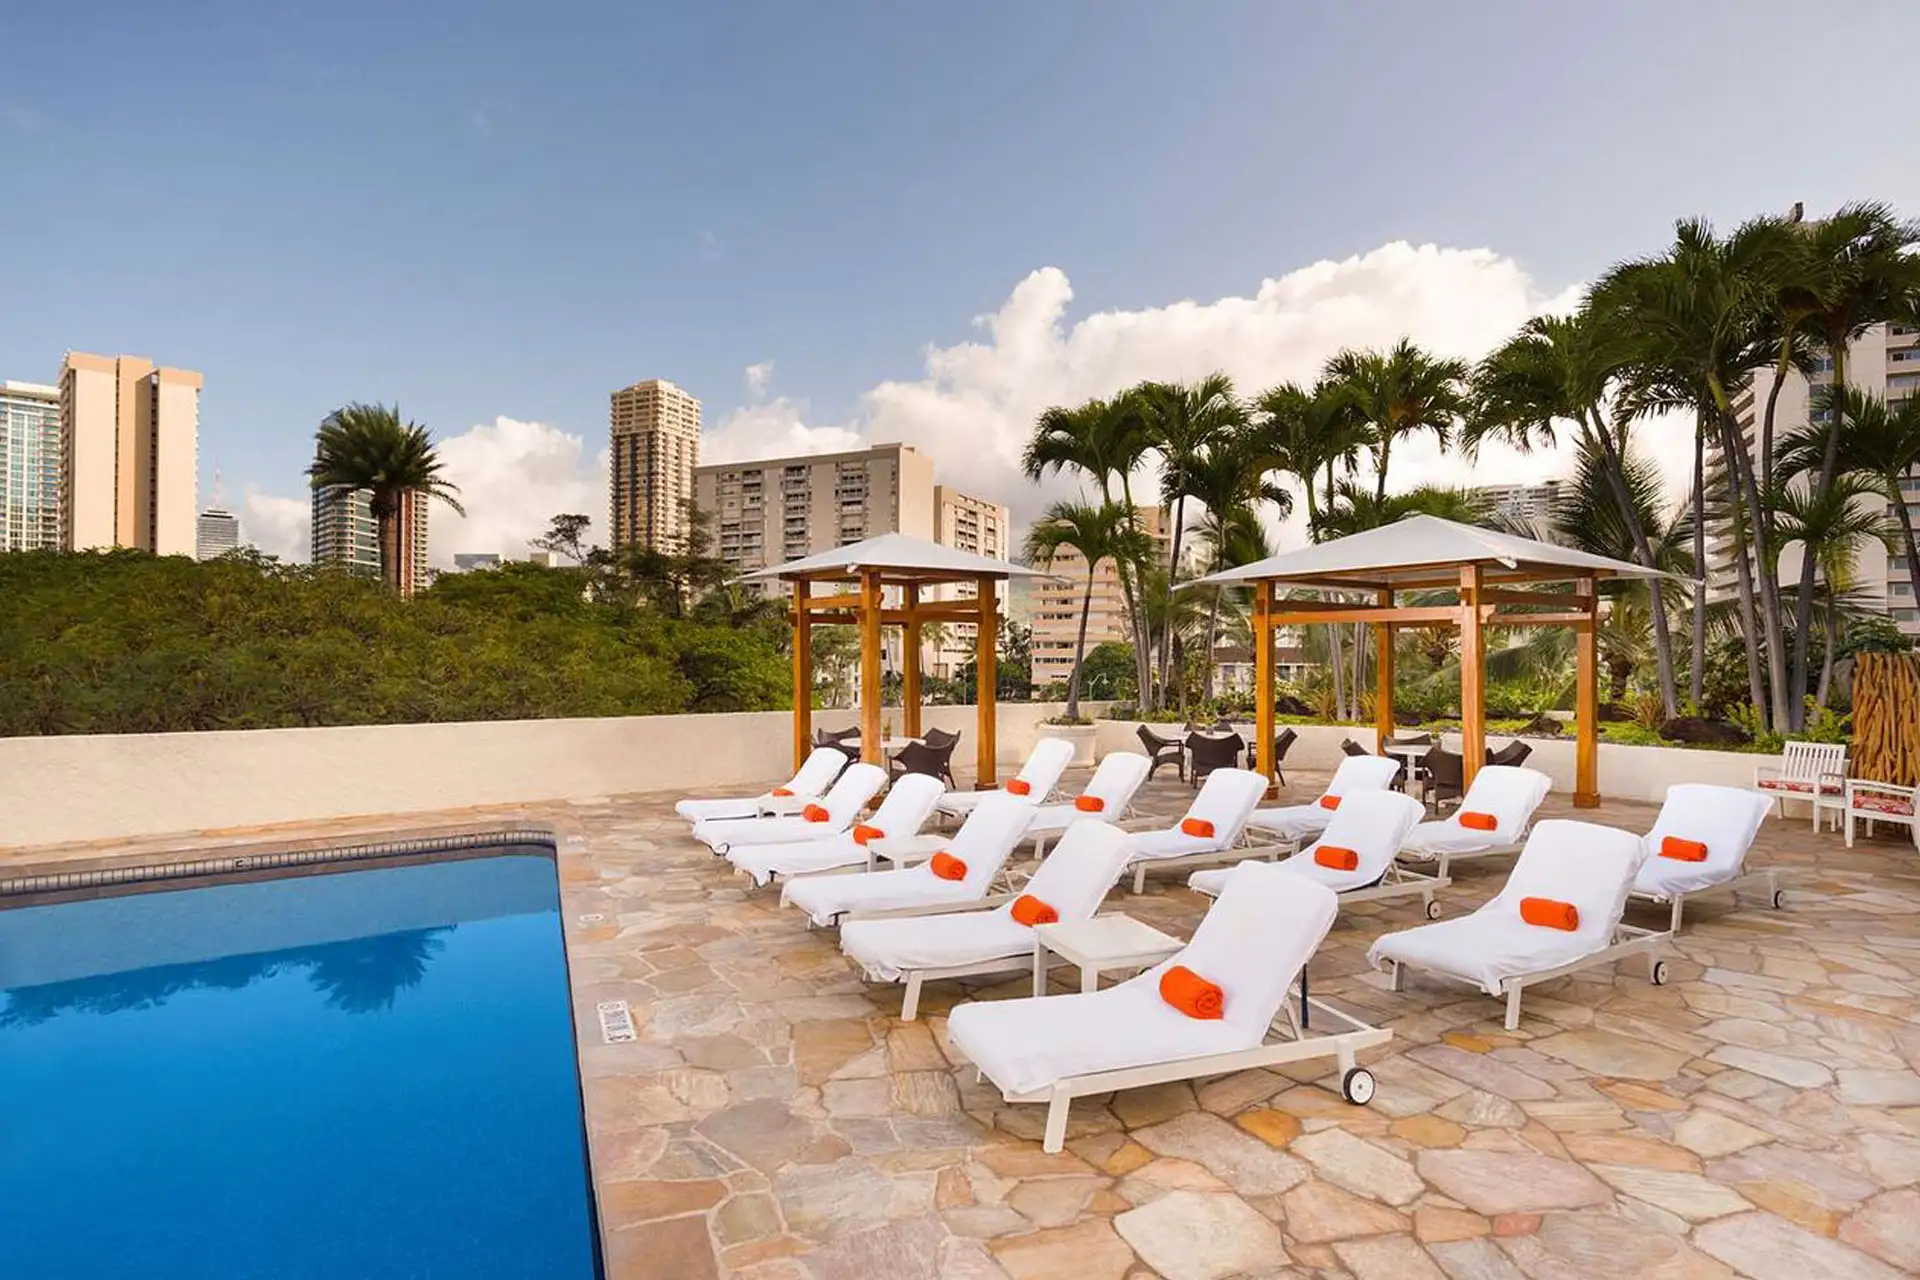 Pool at Luana Waikiki Hotel and Suites; Courtesy of Luana Waikiki Hotel and Suites